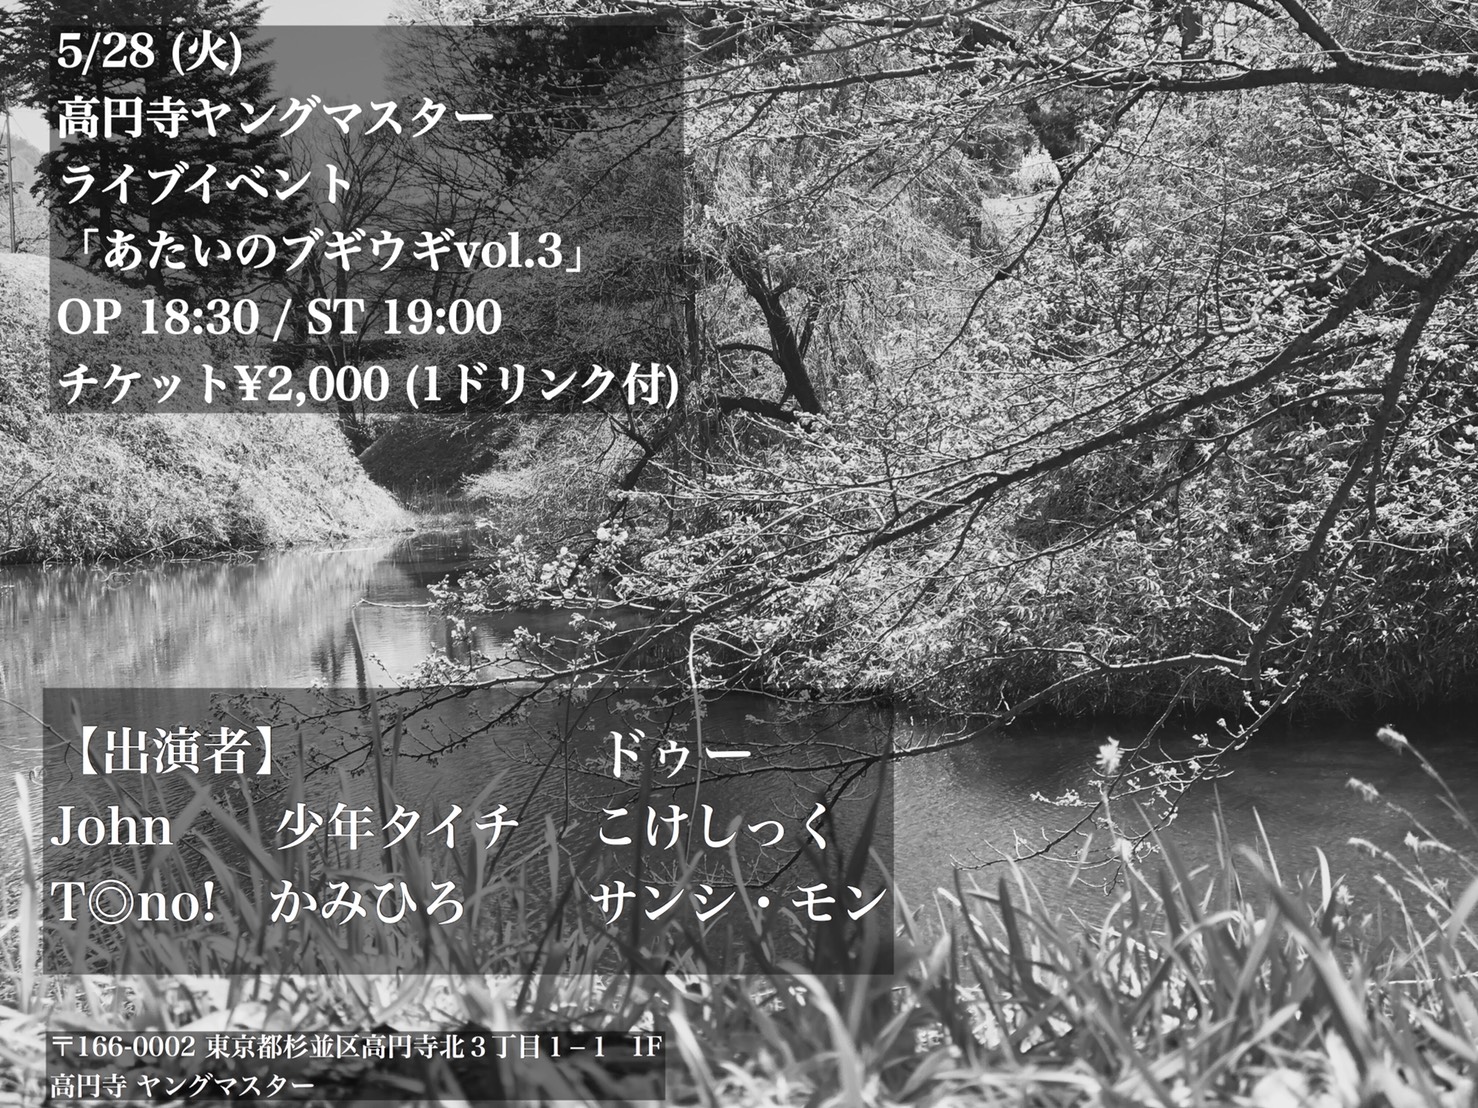 5/28 (火) 高円寺ヤングマスター ライブイベント 「あたいのブギウギvol.3」